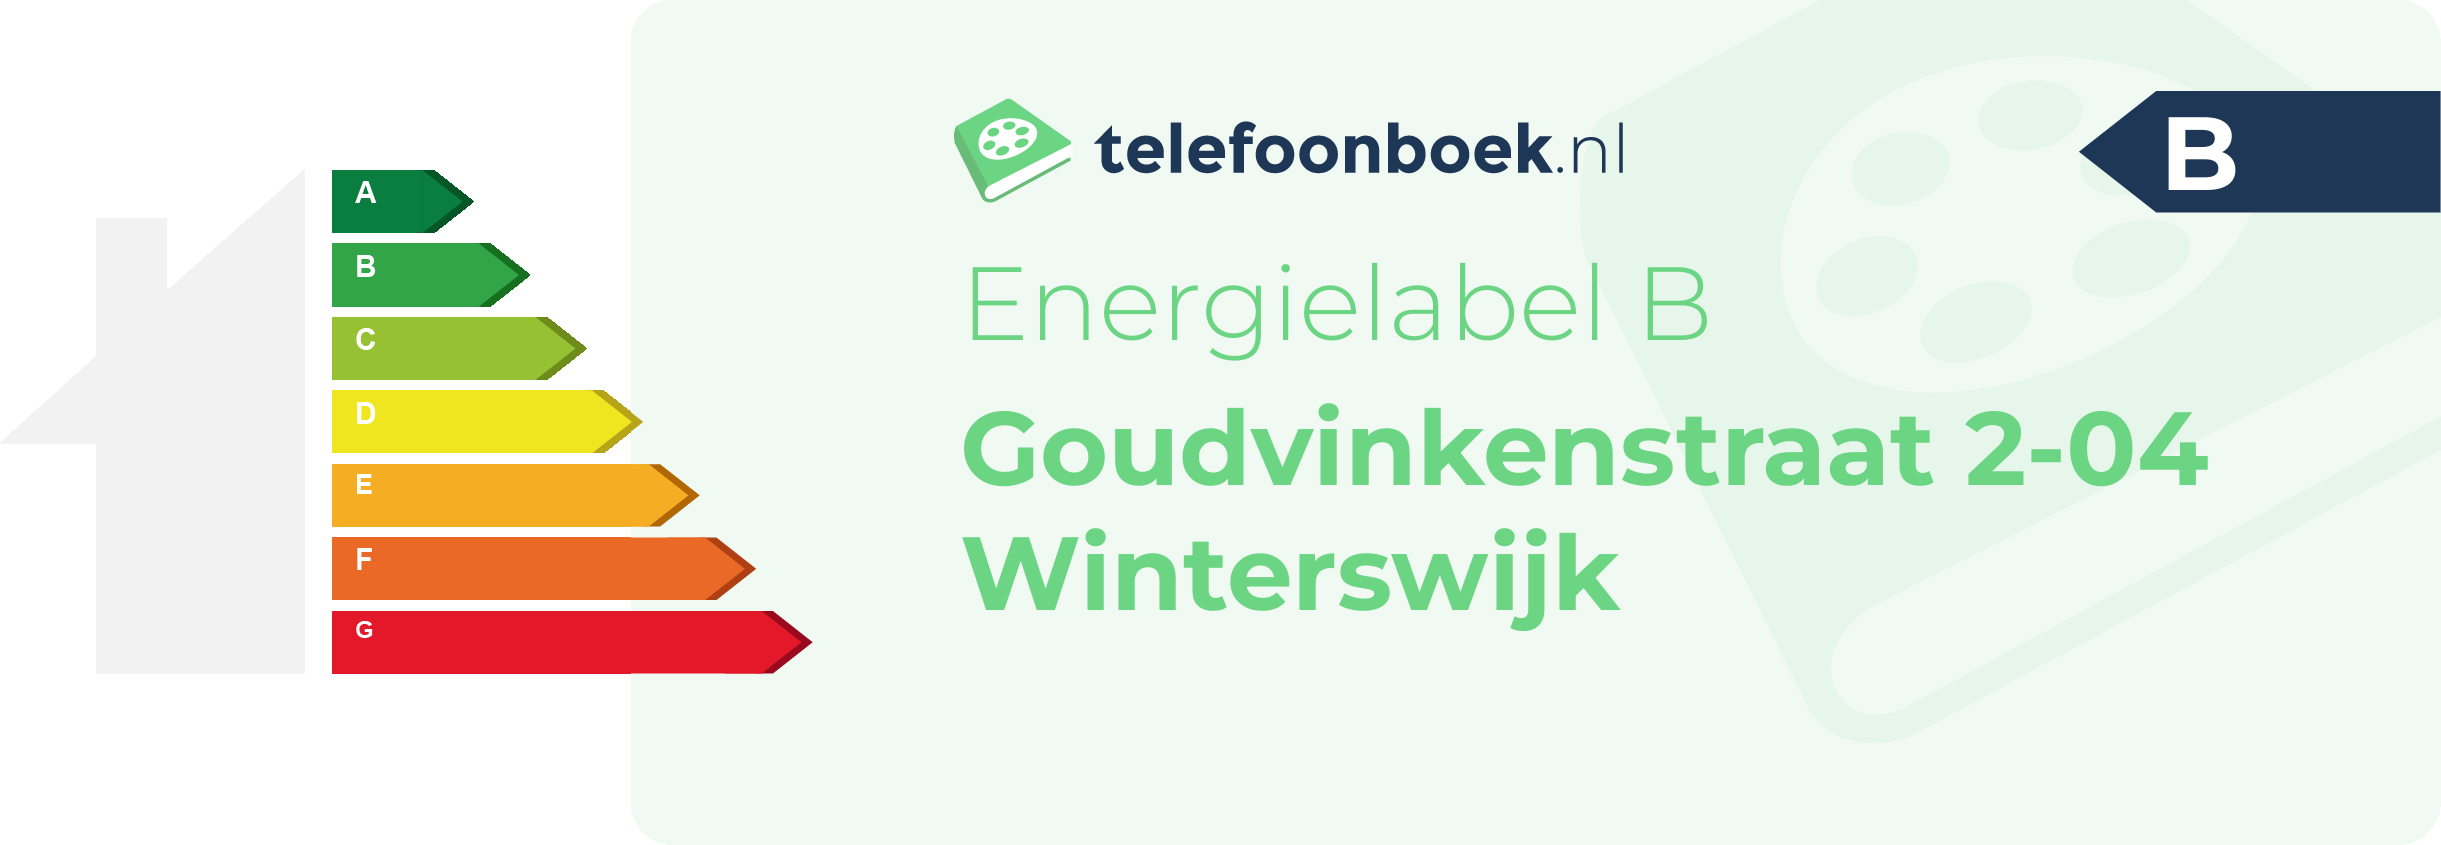 Energielabel Goudvinkenstraat 2-04 Winterswijk